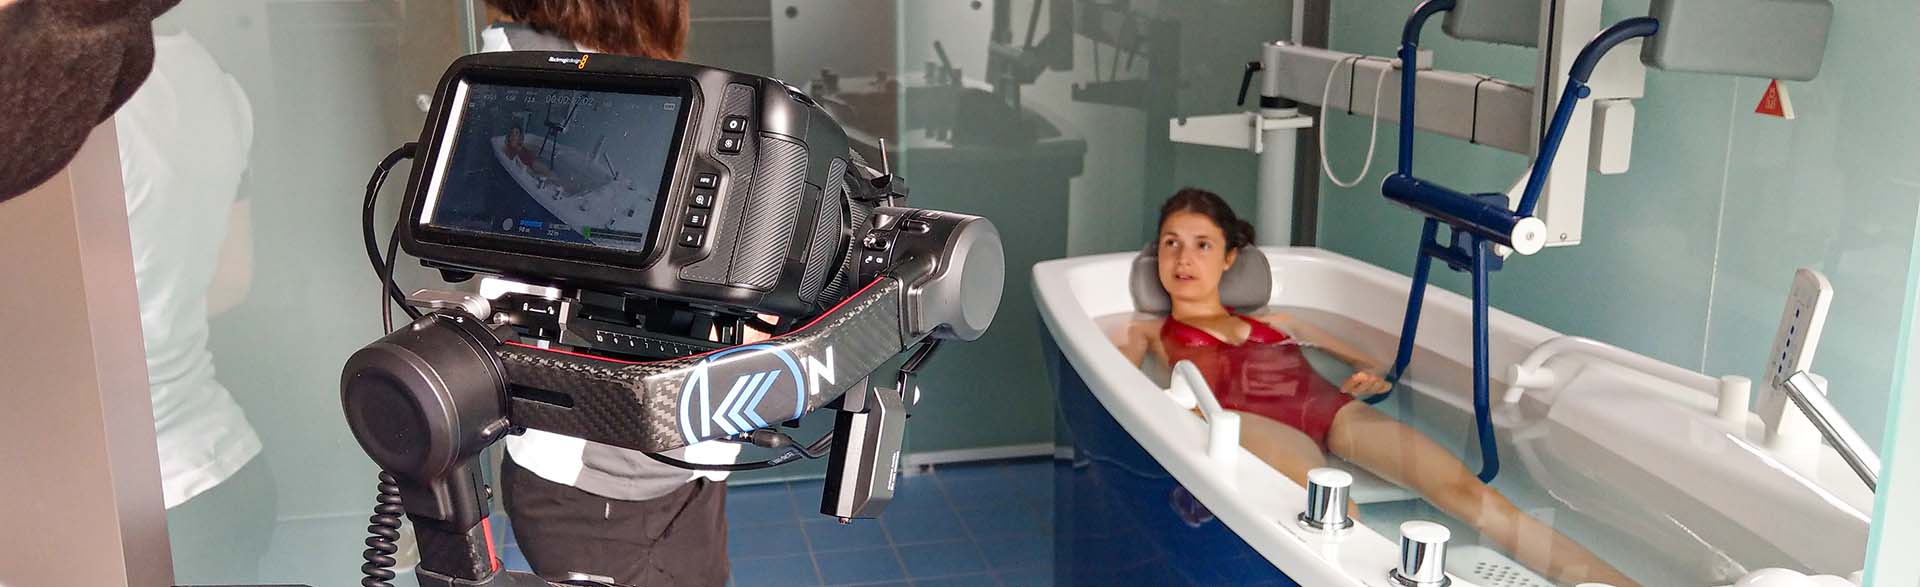 Videoproduktion im Erzgebirge bei der Knappschafts-Klinik Warmbad mit Schauspielerin